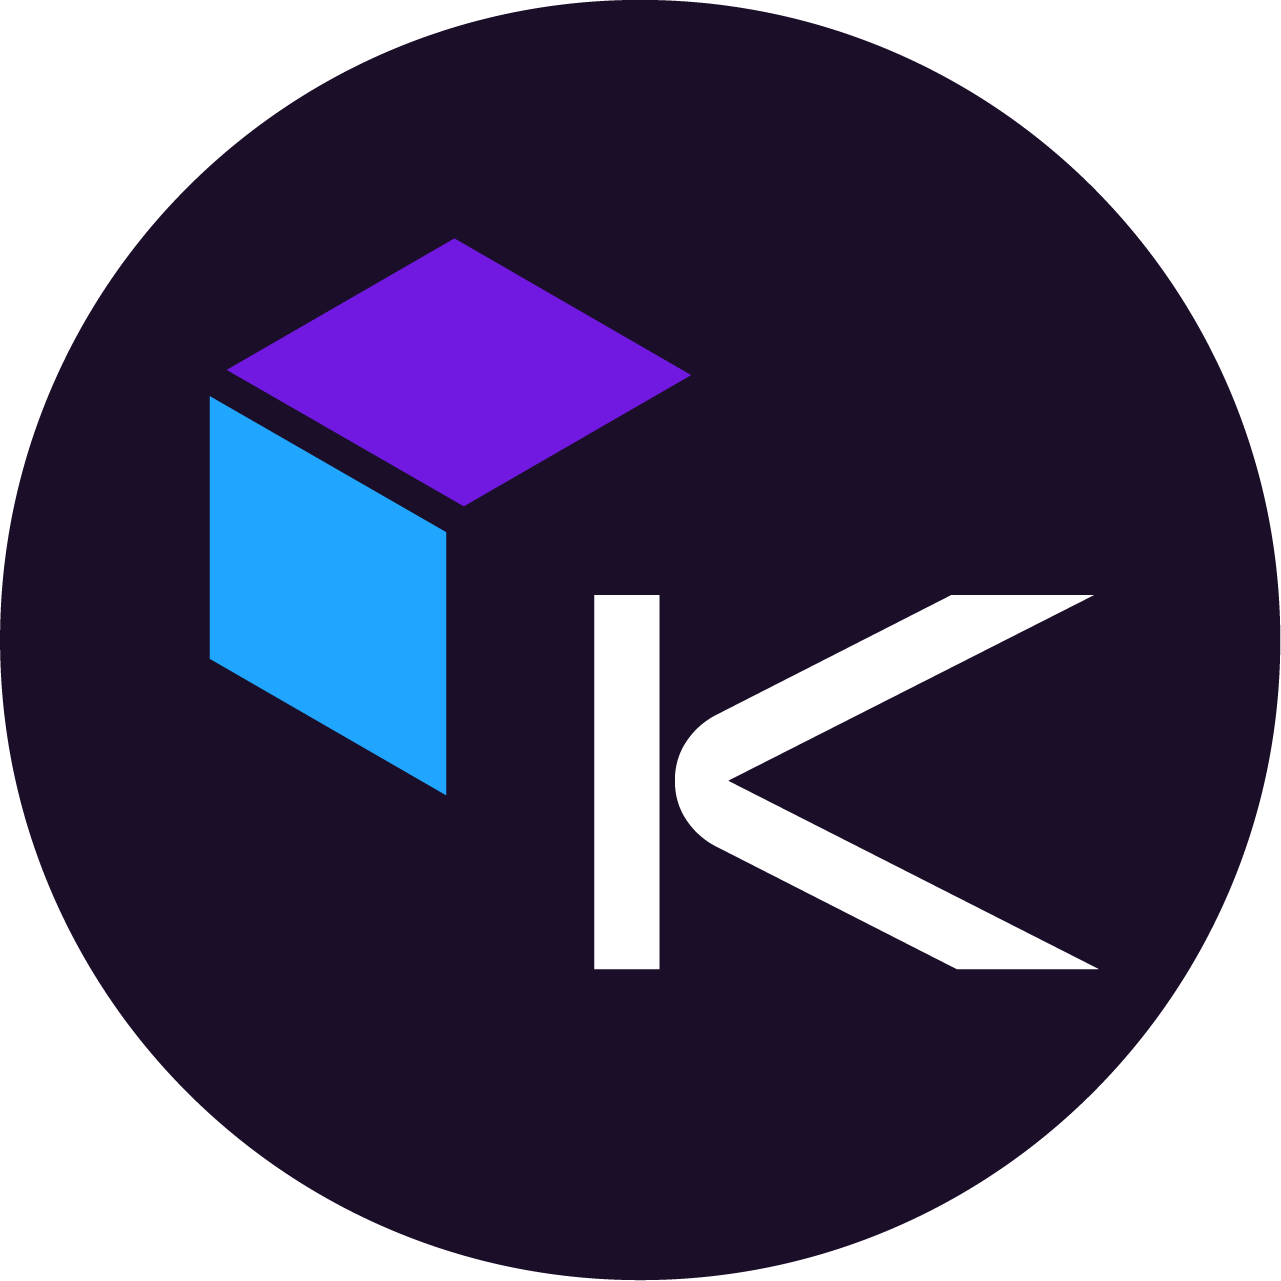 Kepler Communications Inc. logo